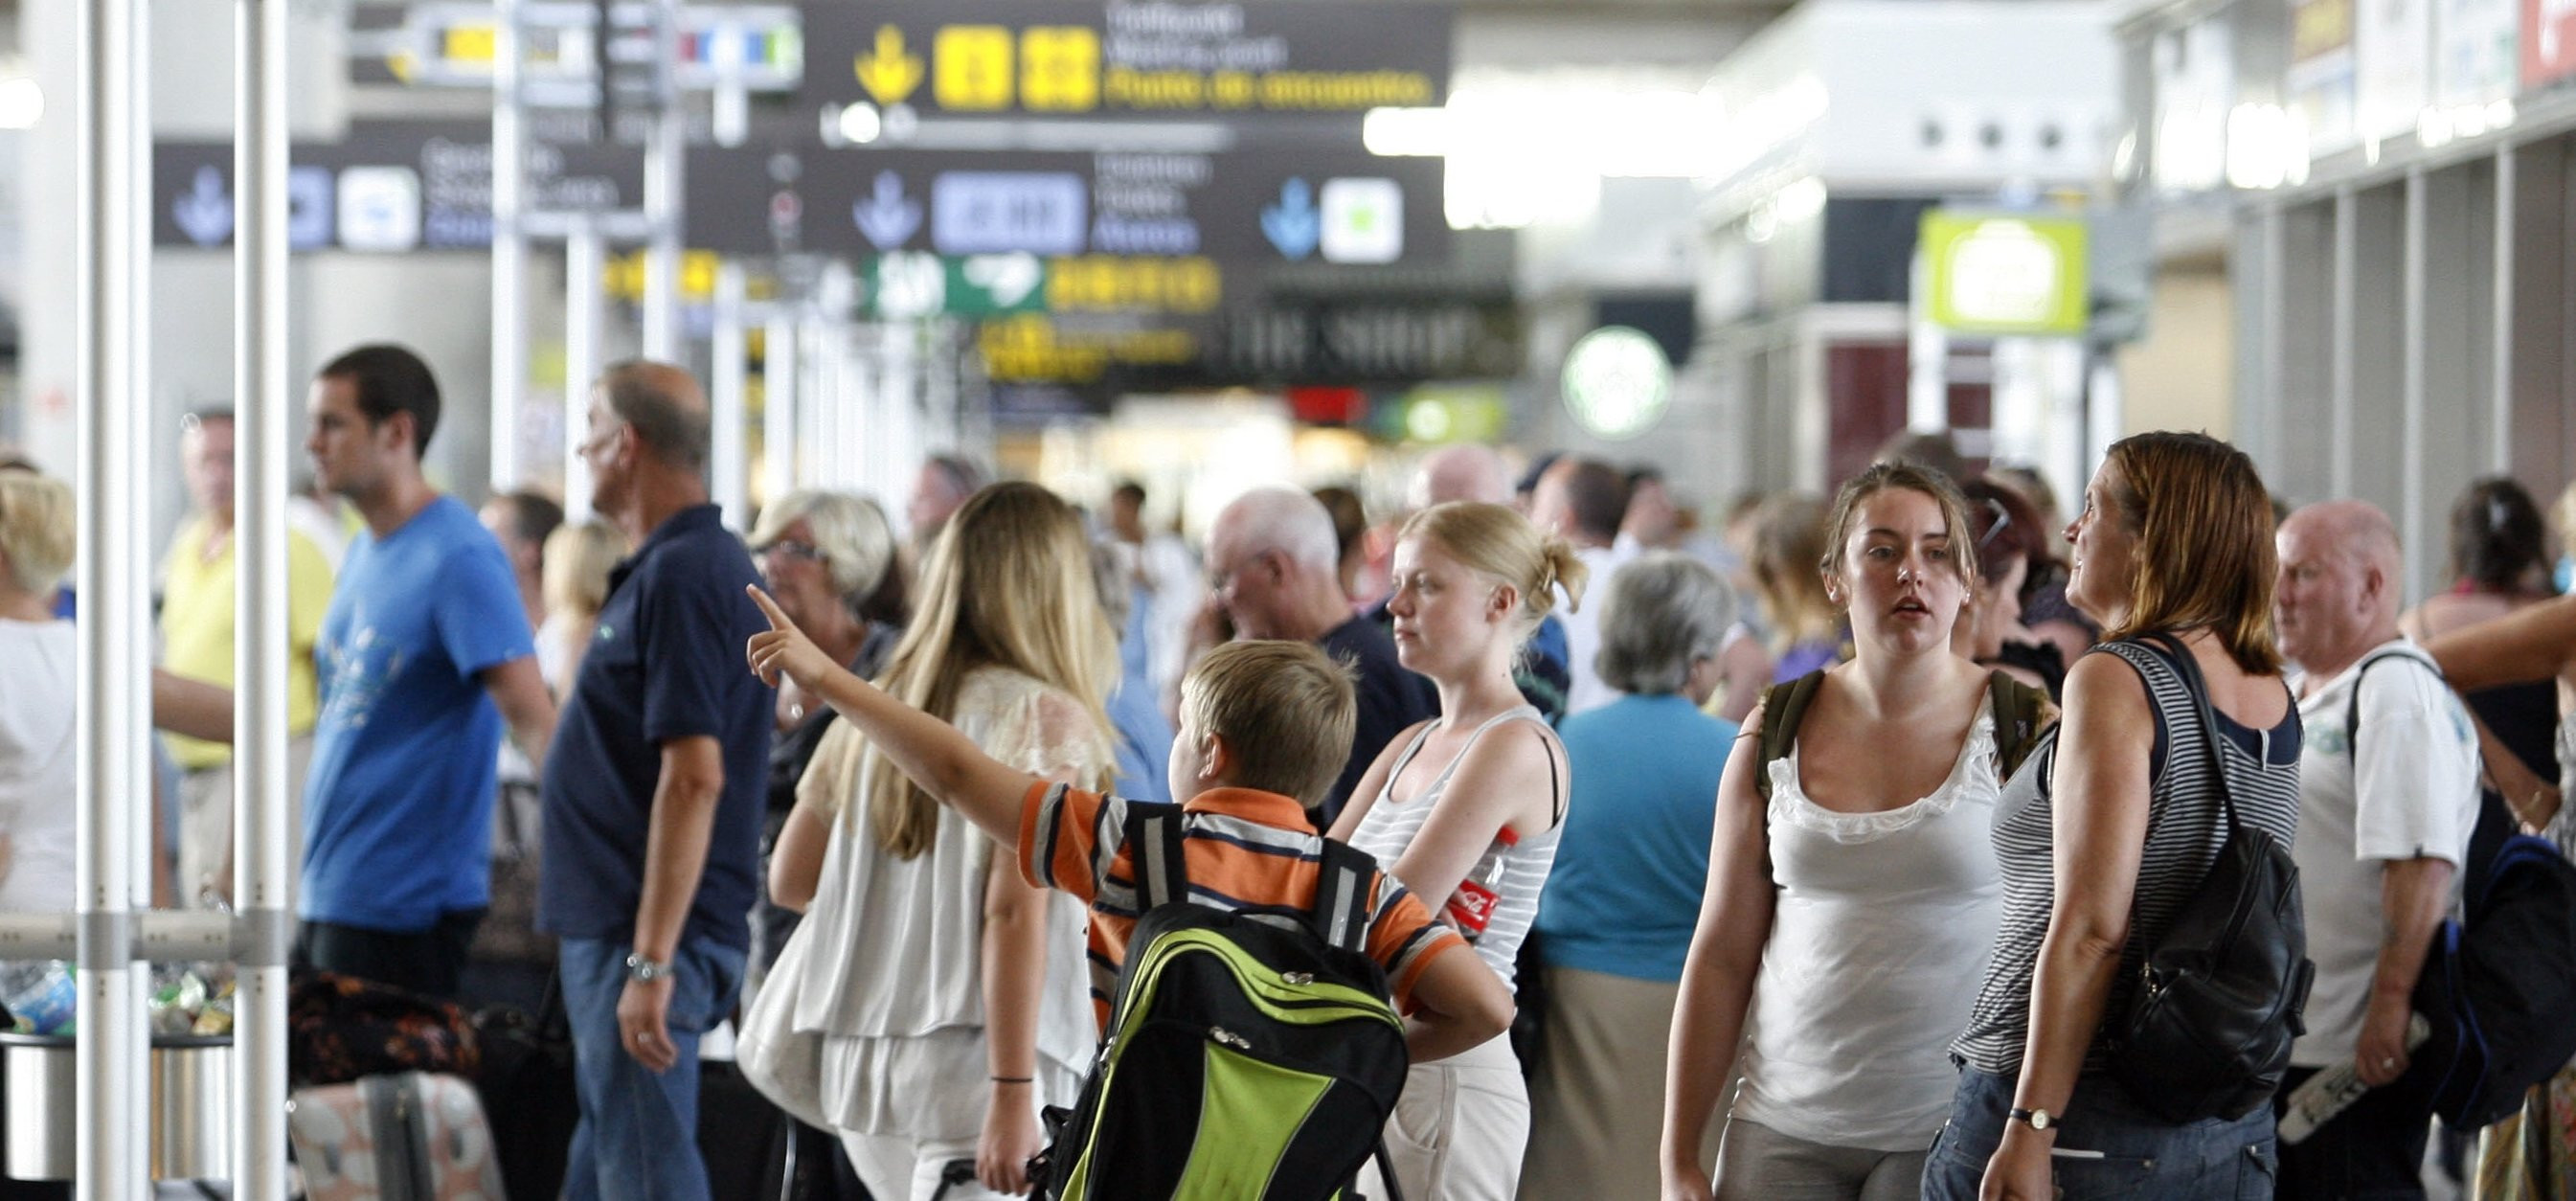 Imagen de turistas en el aeropuerto de El Prat esperano la salida de su vuelo